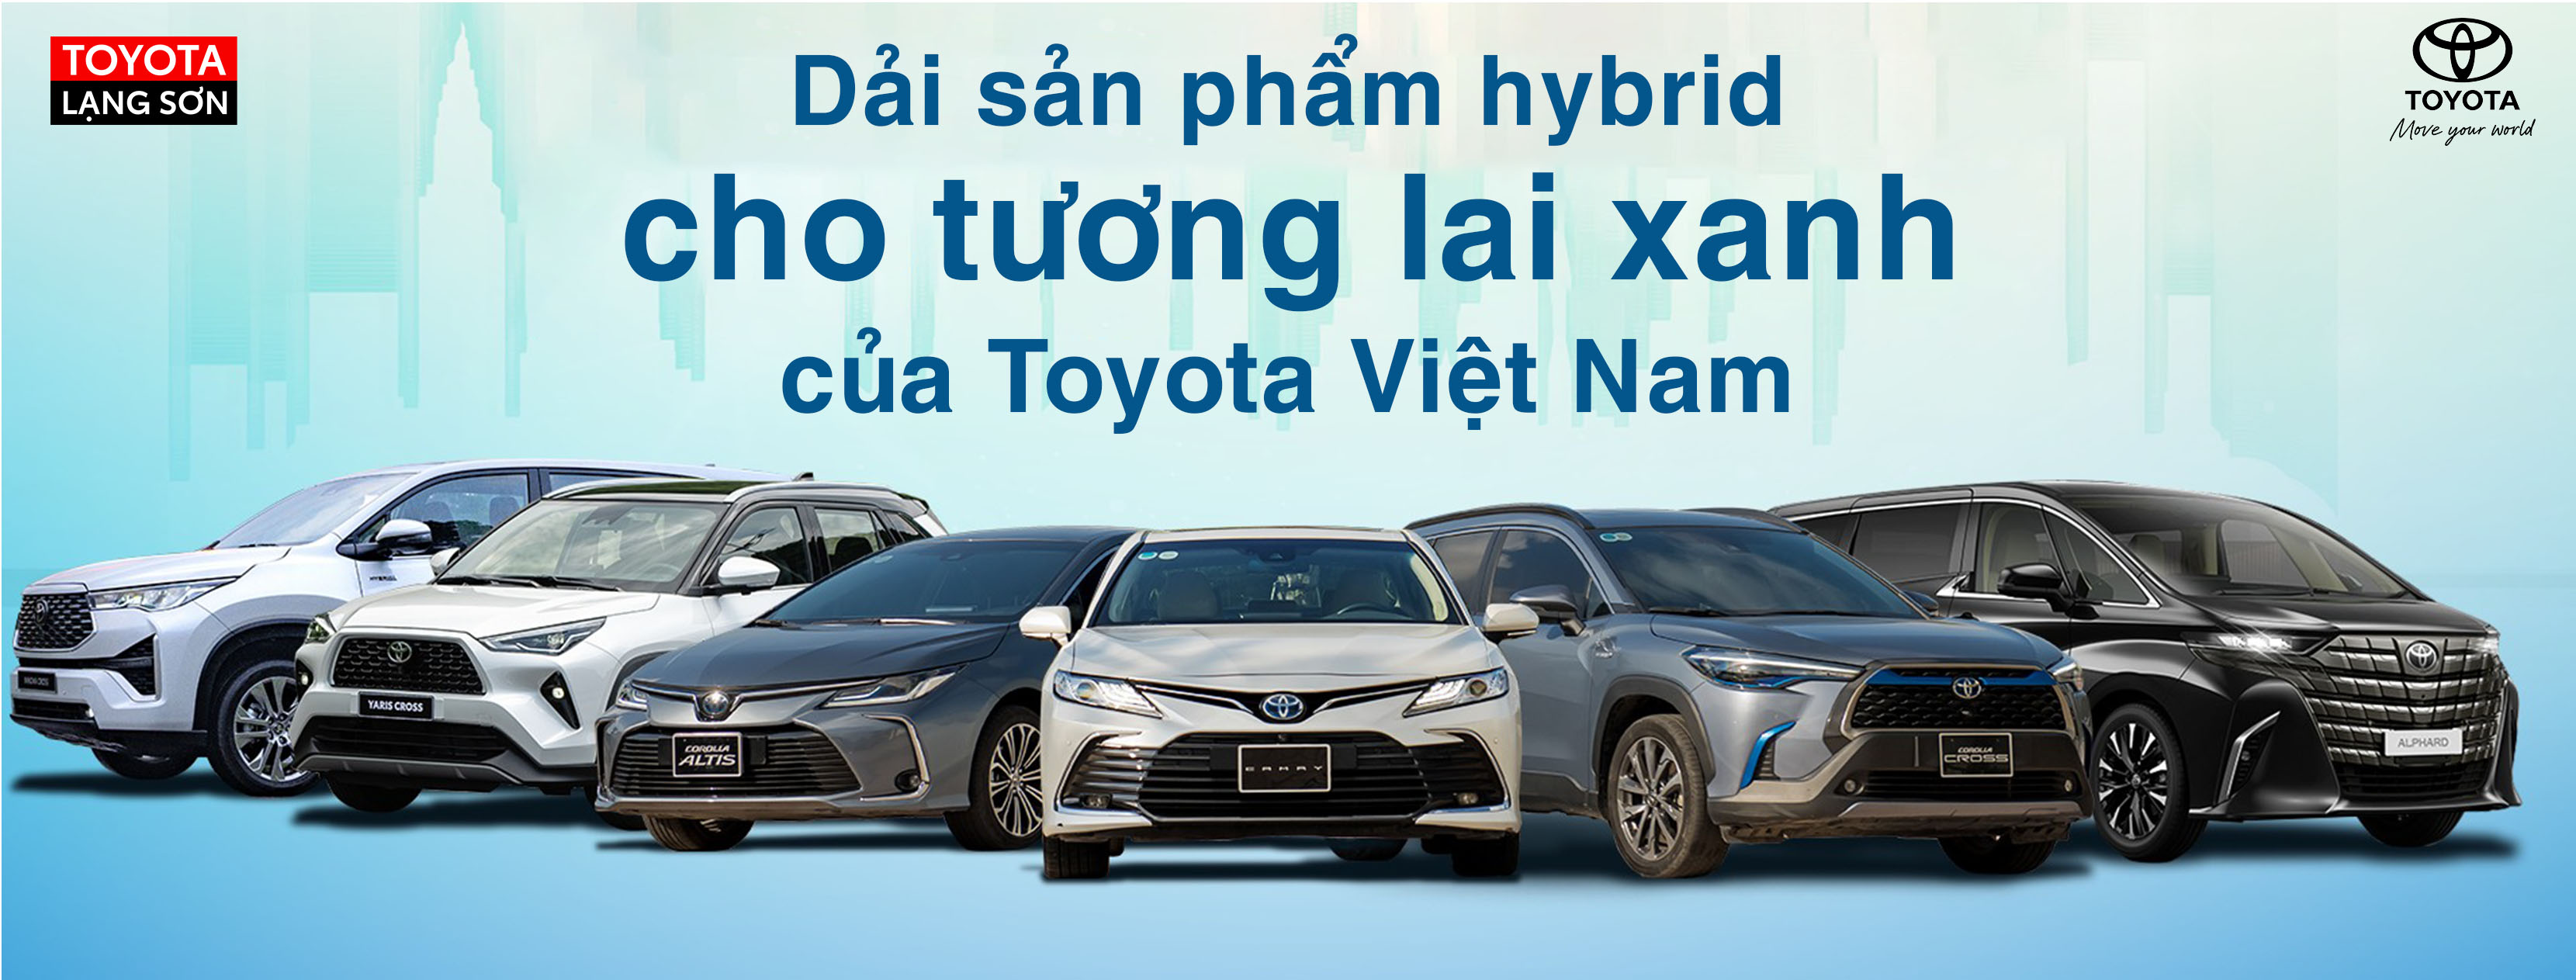 Toyota Lạng Sơn ảnh 1